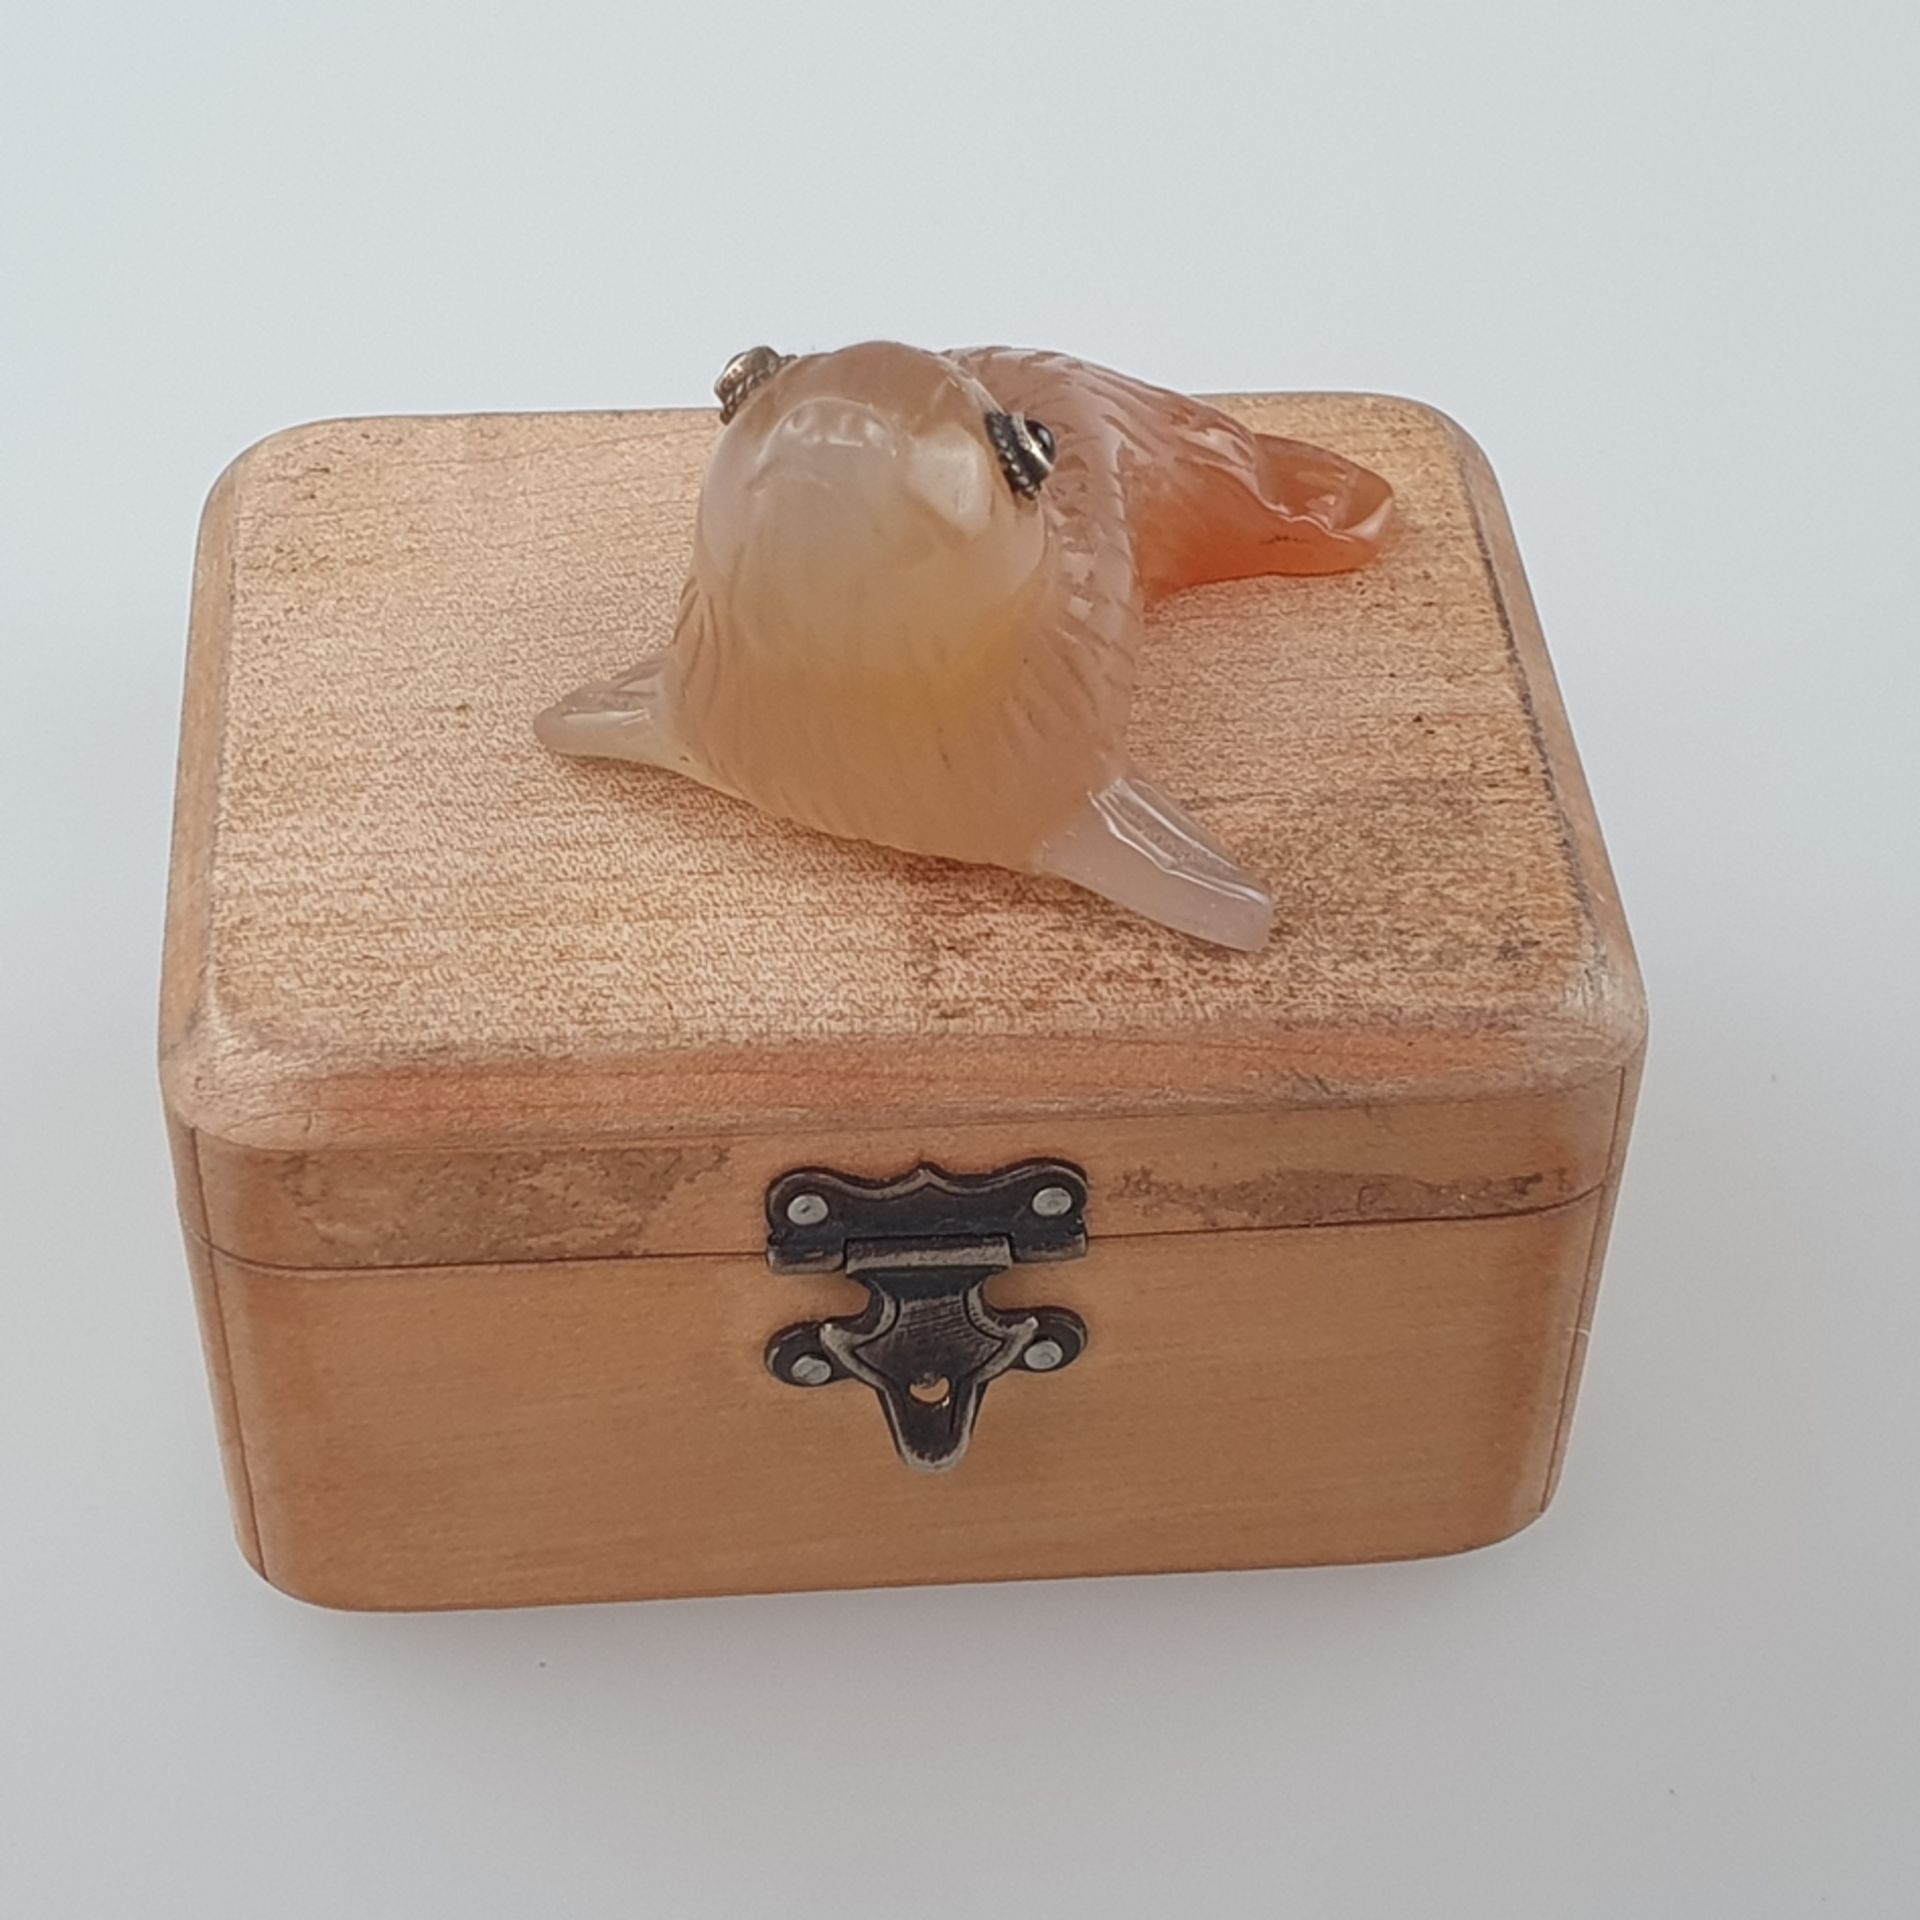 Miniatur-Tierfigur in der Art von Fabergé - vollrunde Achatschnitzerei in Gestalt eines Seehundes,  - Bild 7 aus 8